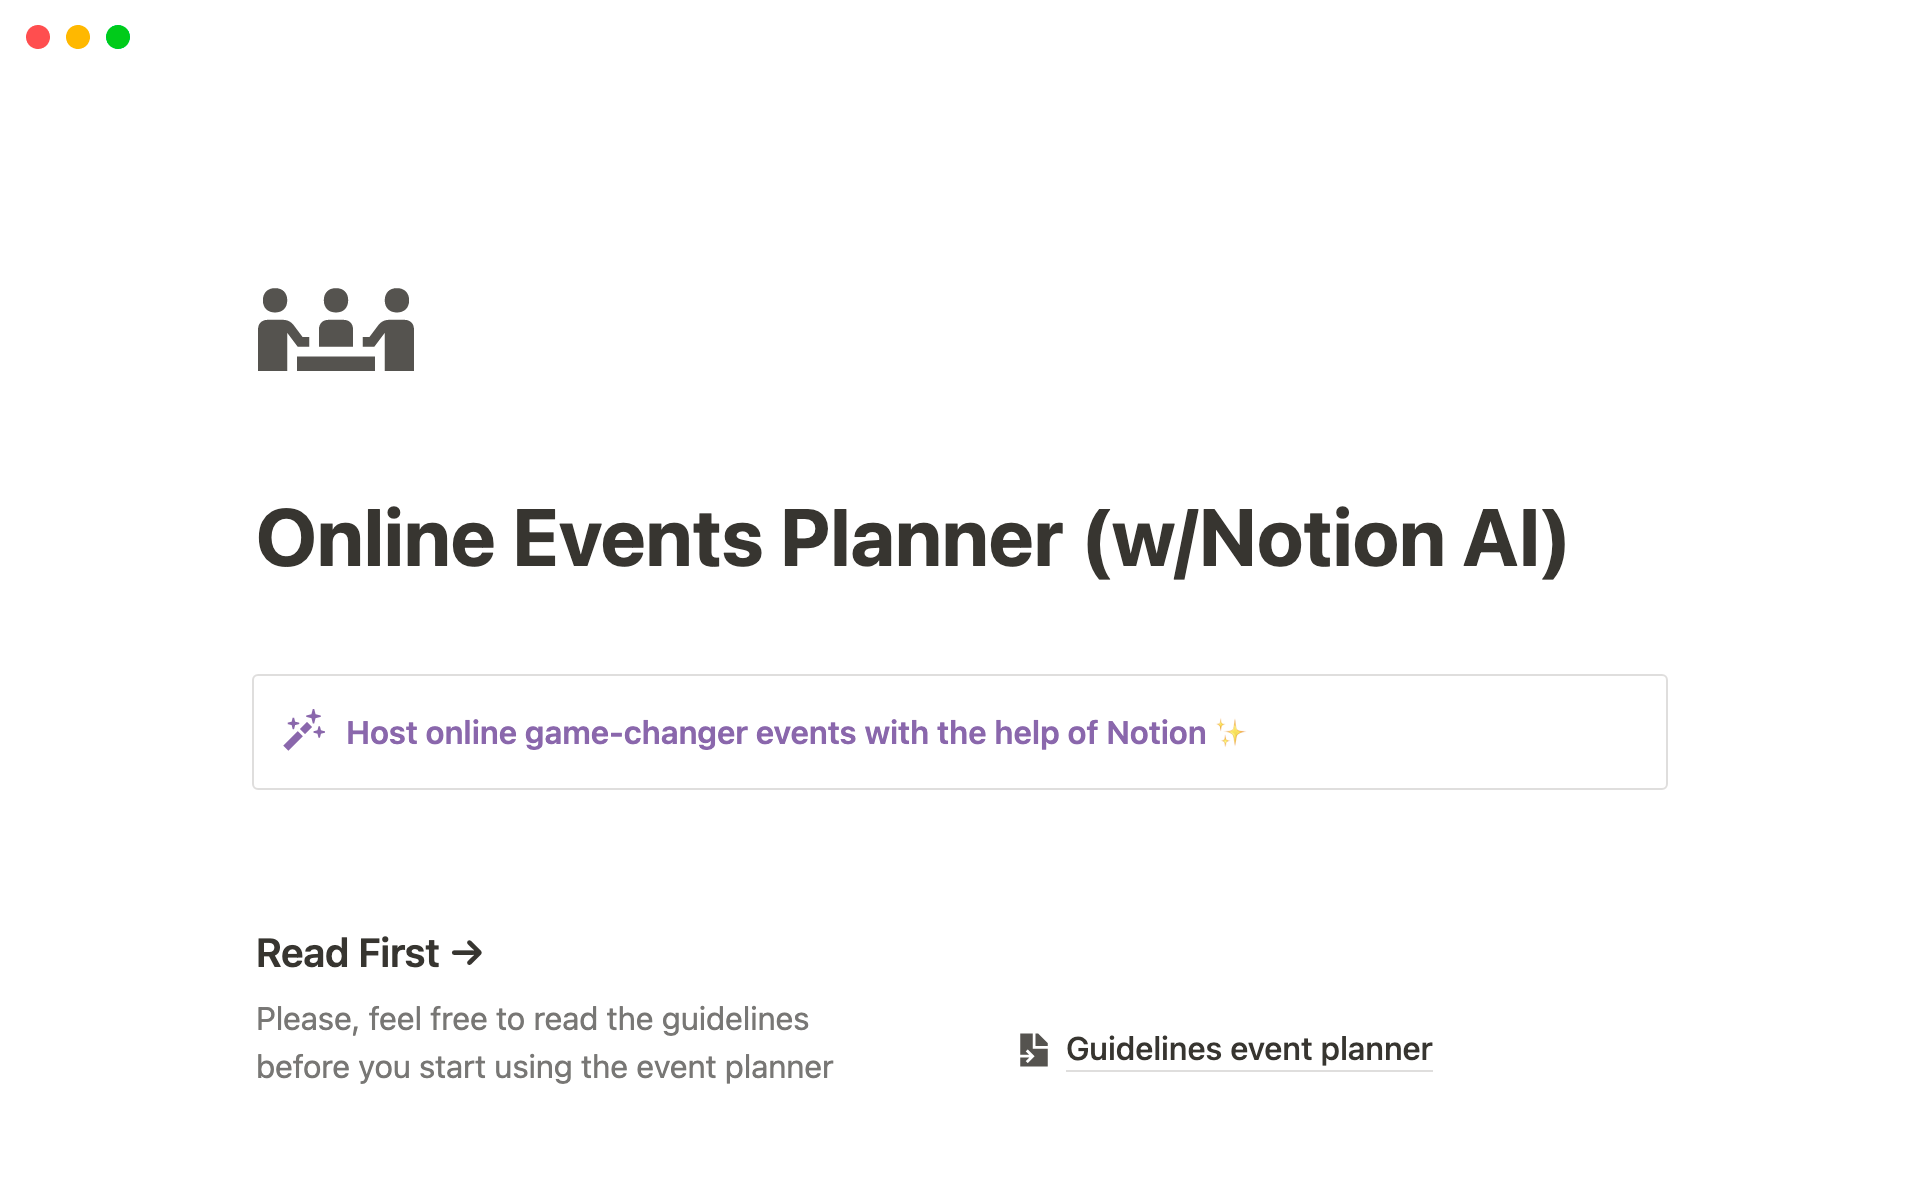 Online Events Planner (w/ Notion AI)님의 템플릿 미리보기